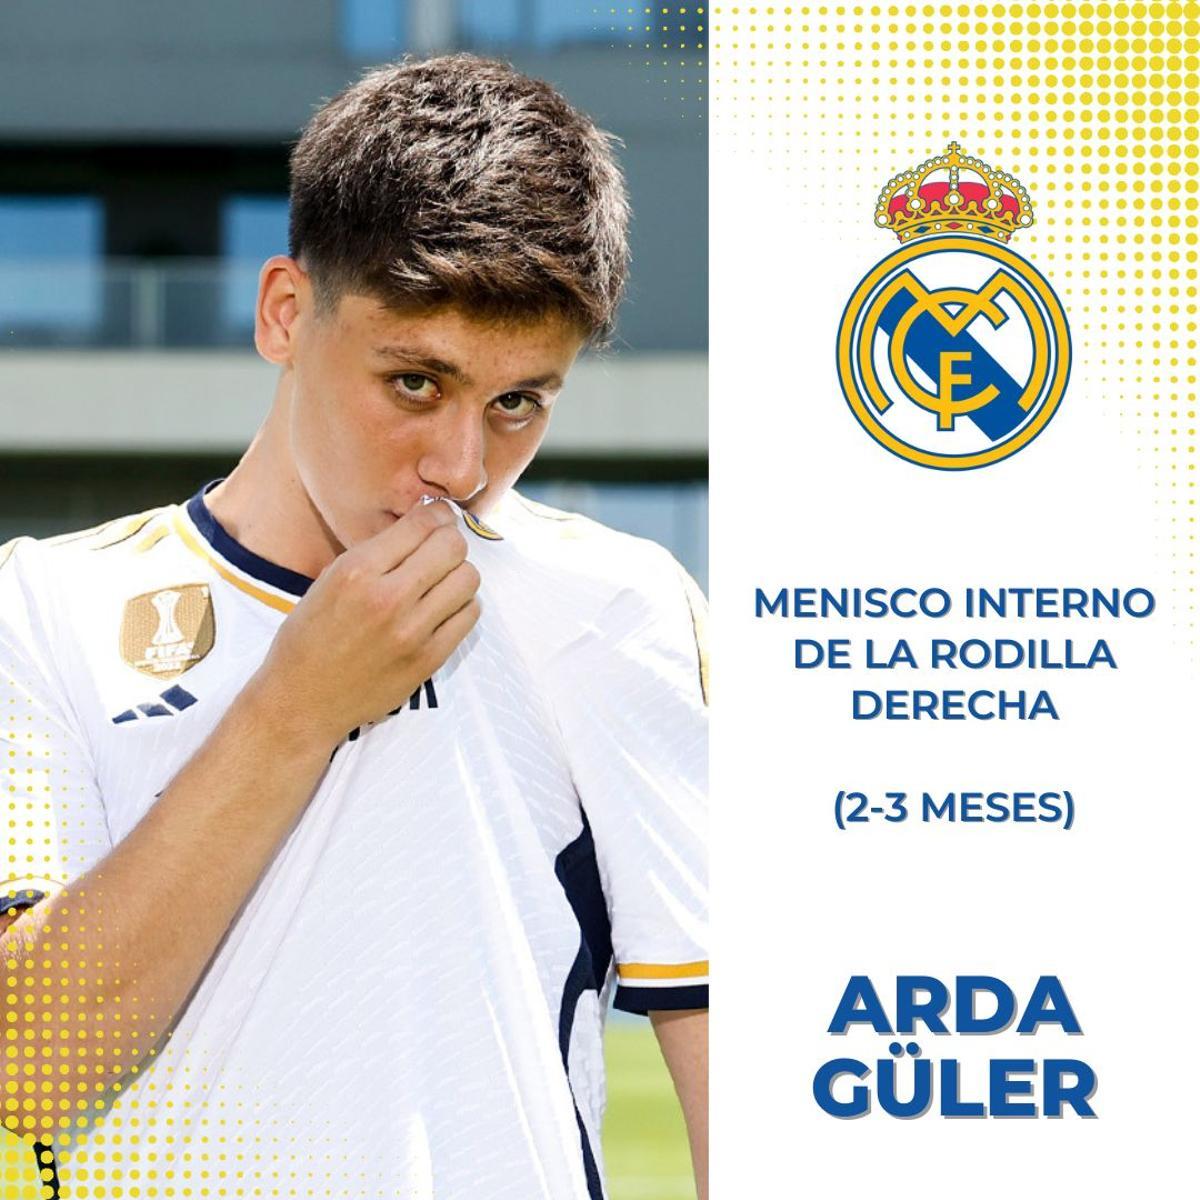 Arda Güler (Real Madrid)